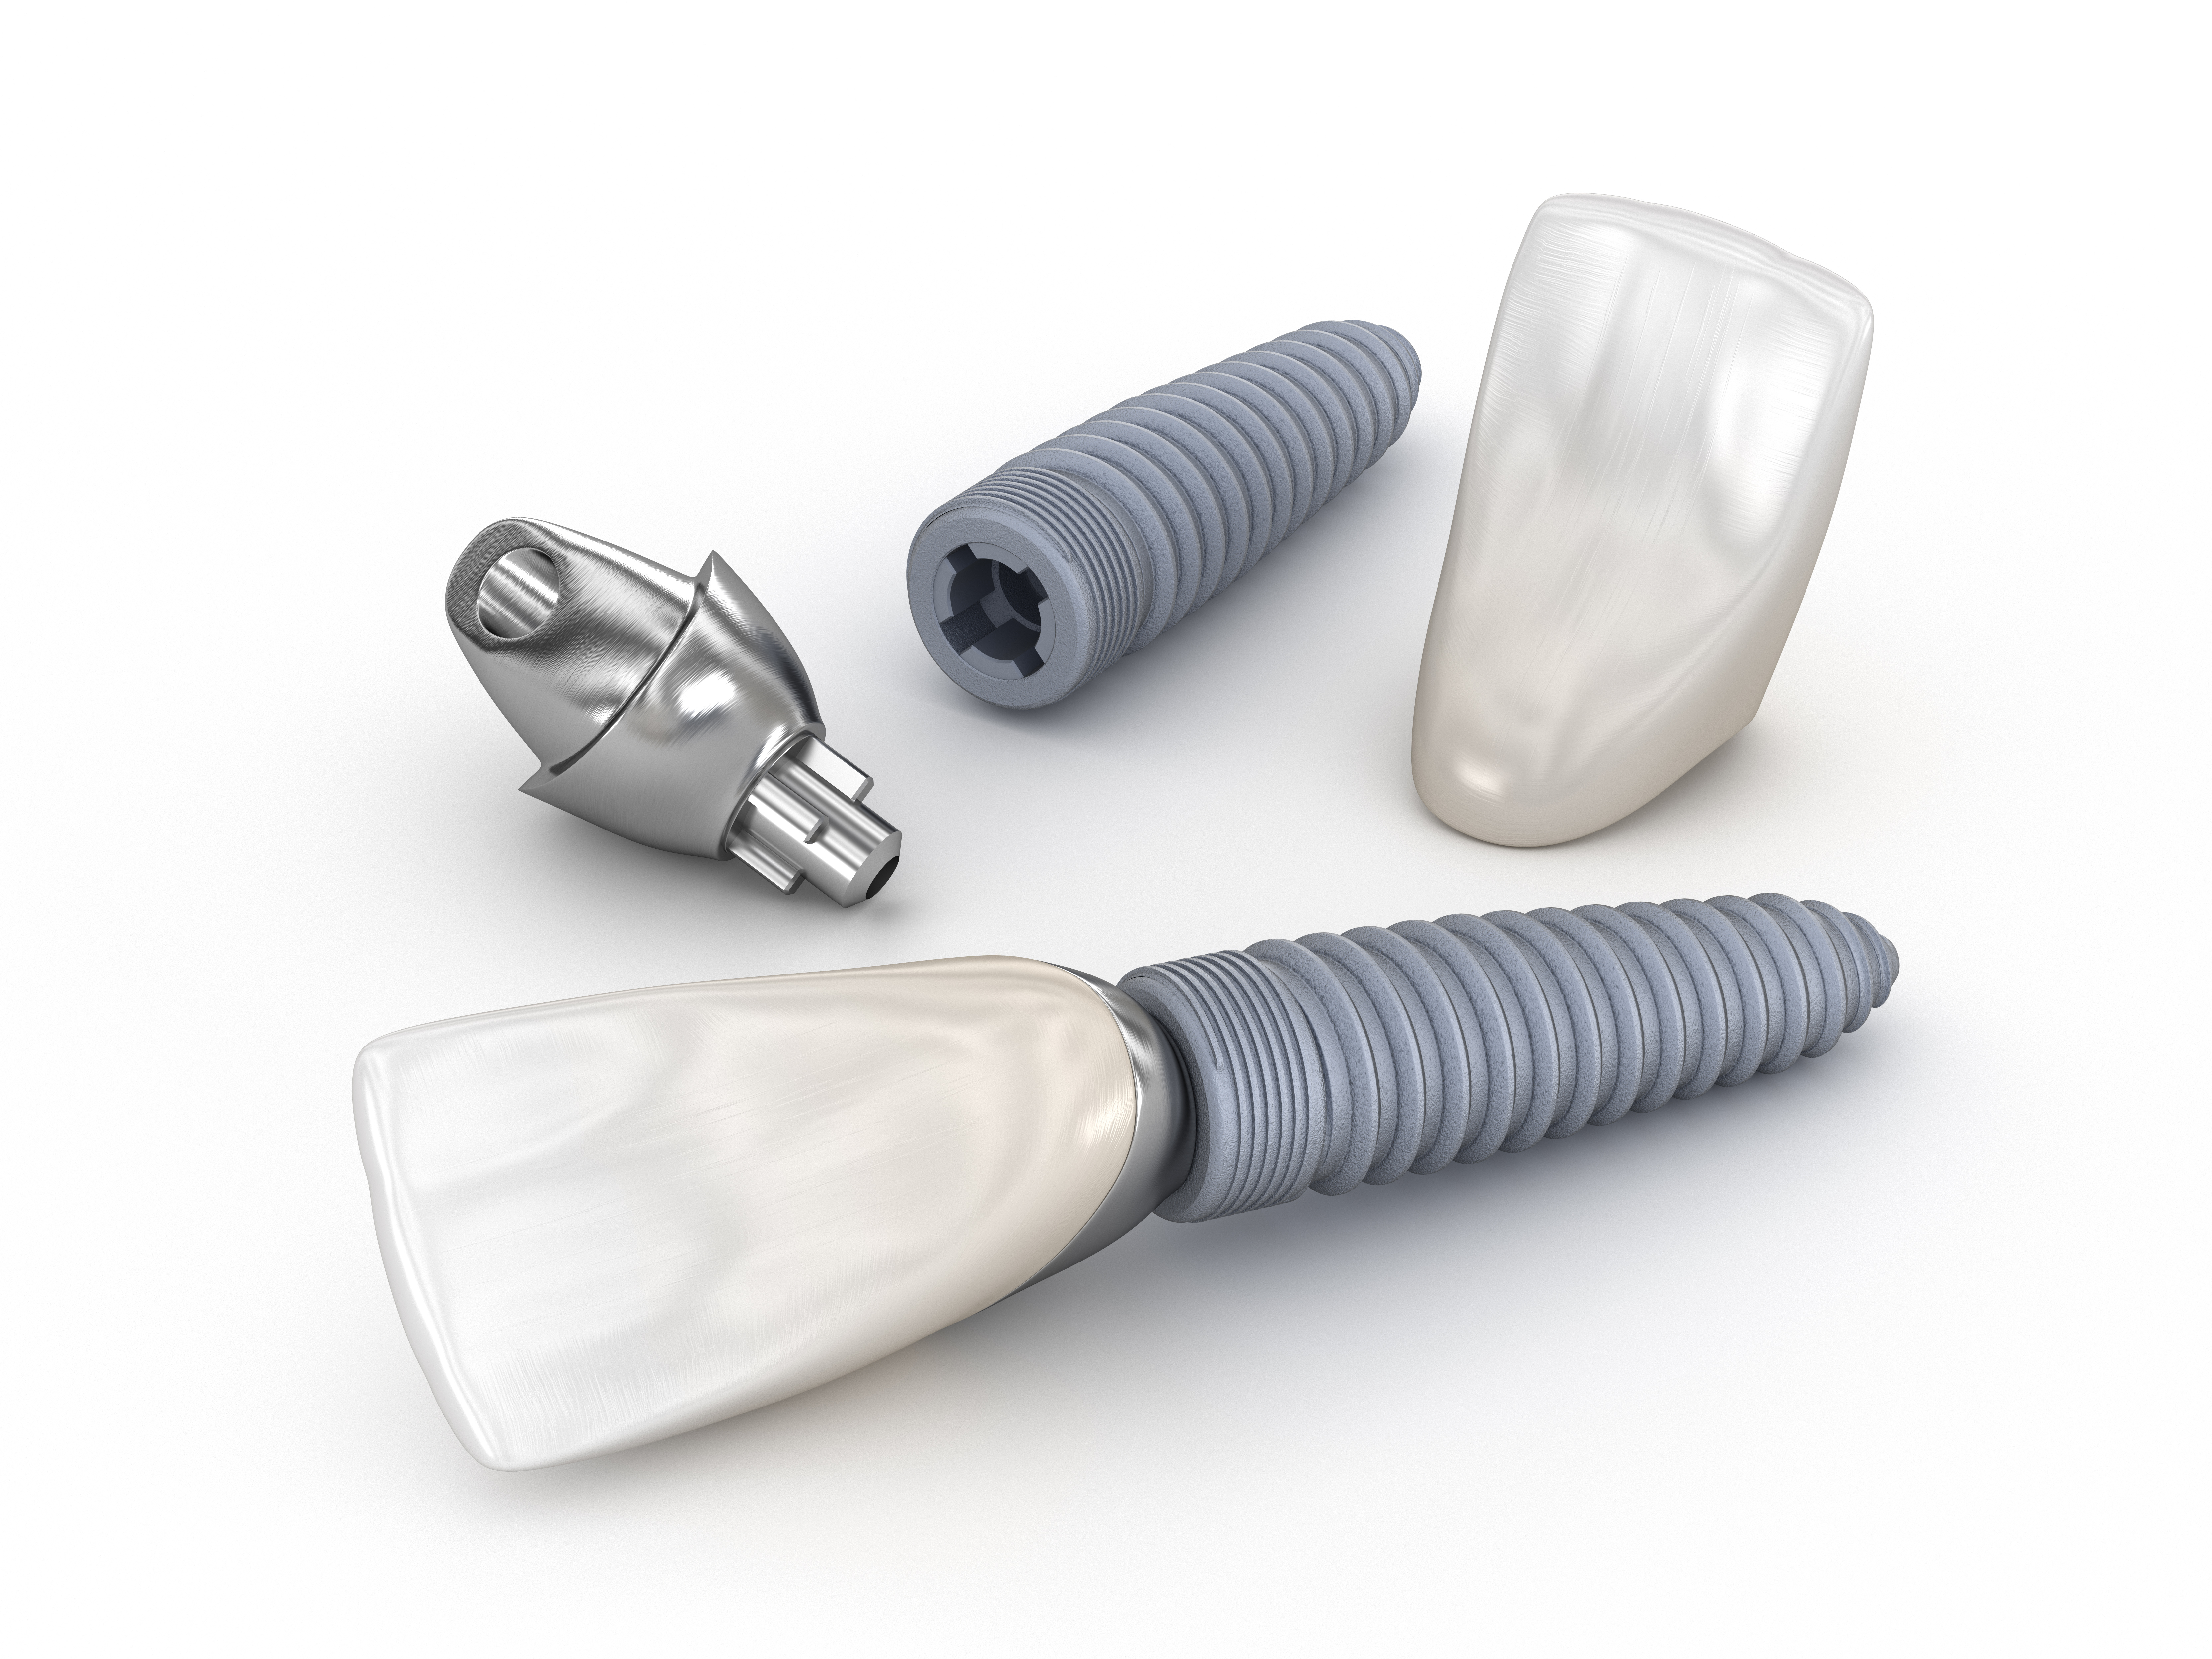 Los implantes dentales se pueden quitar